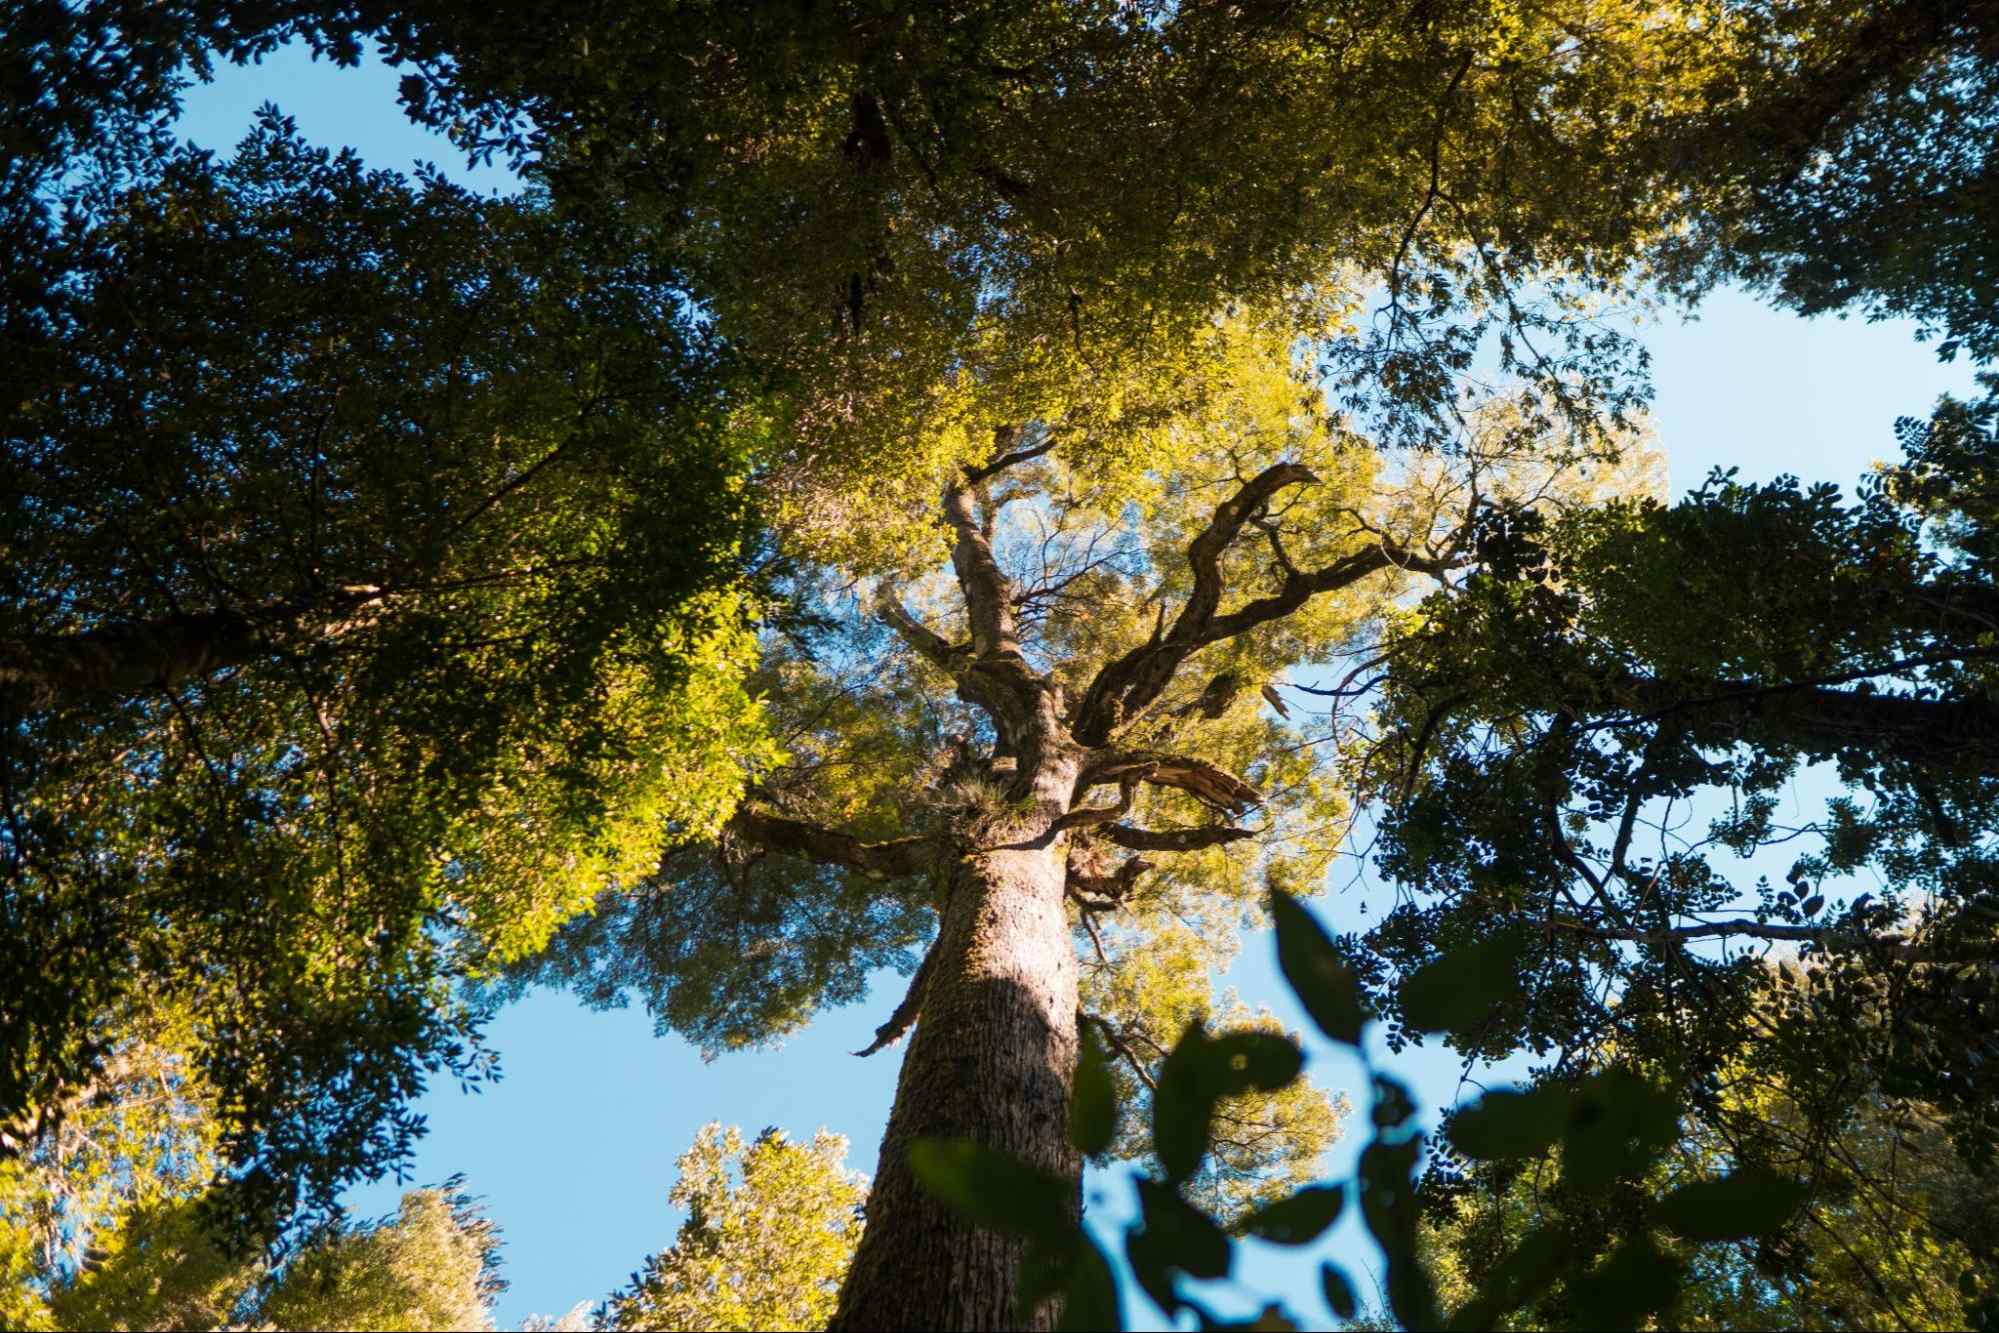 Árvore nativa da floresta amazônica vista de baixo para cima. Ao redor, outras árvores que ocupam o céu azul com folhas verdes.